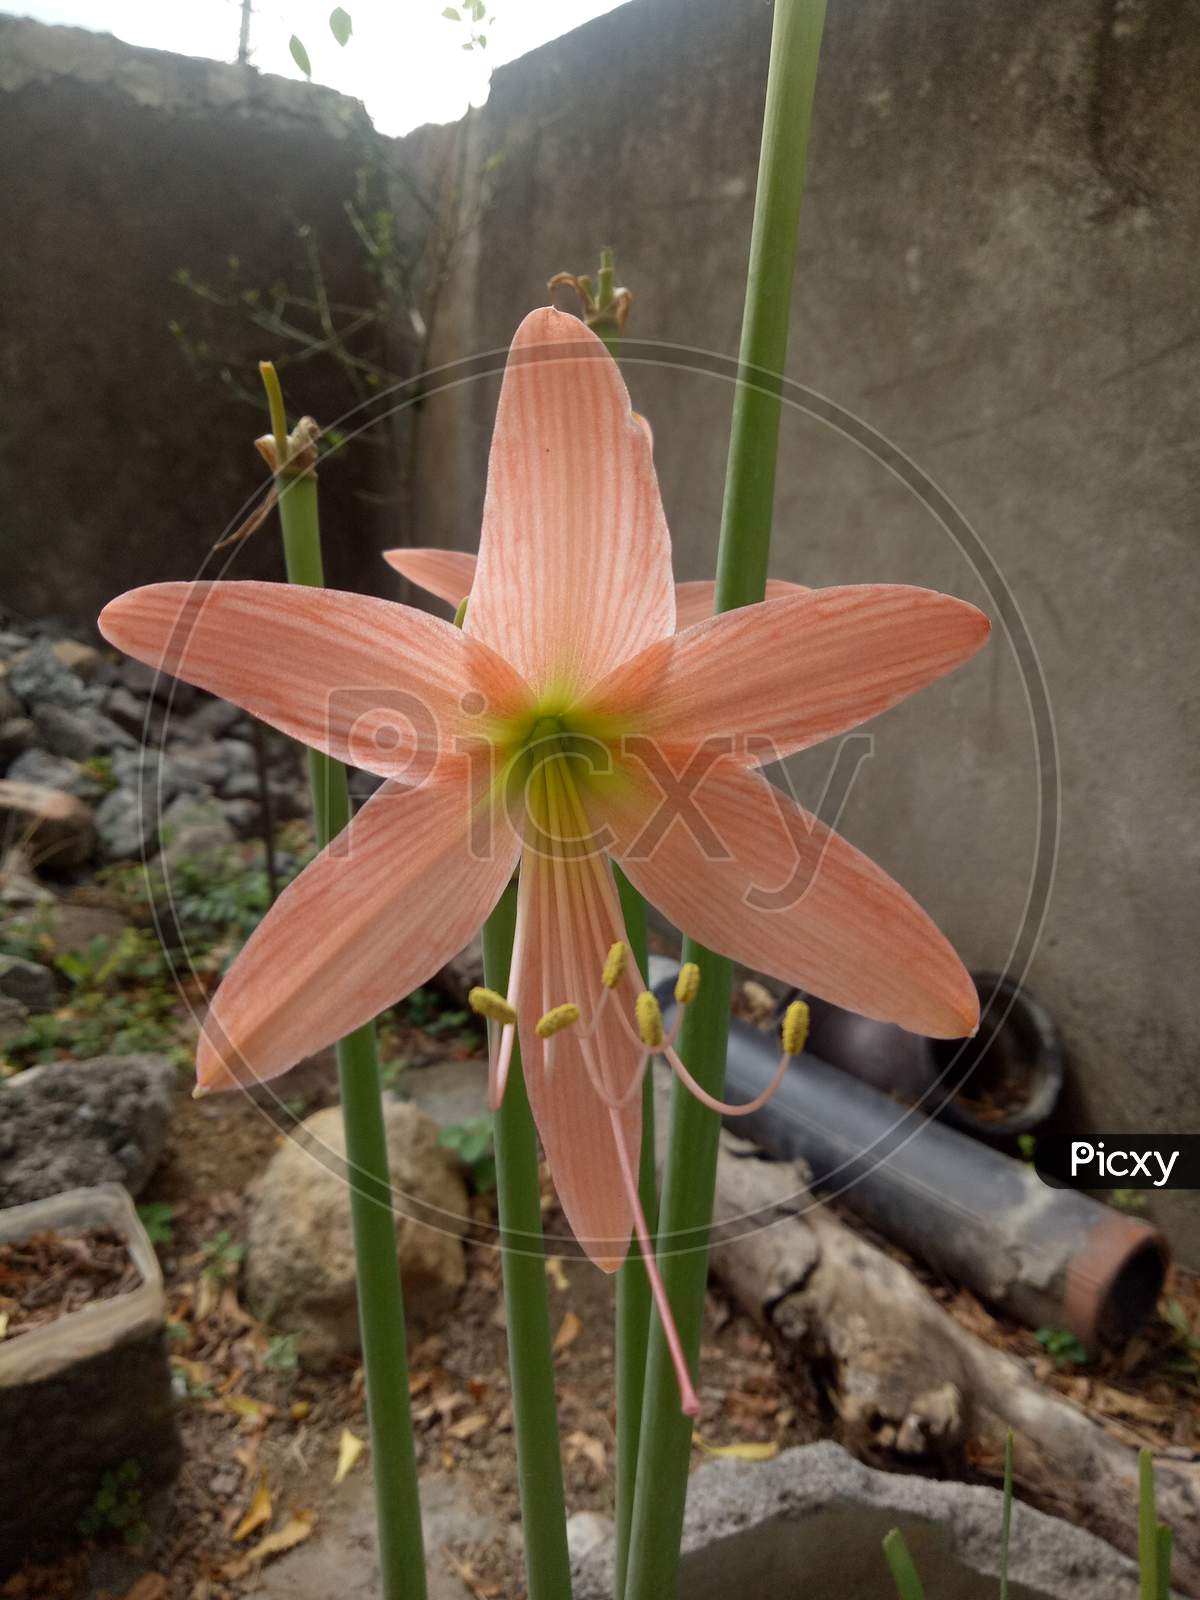 Rhodophiala flower